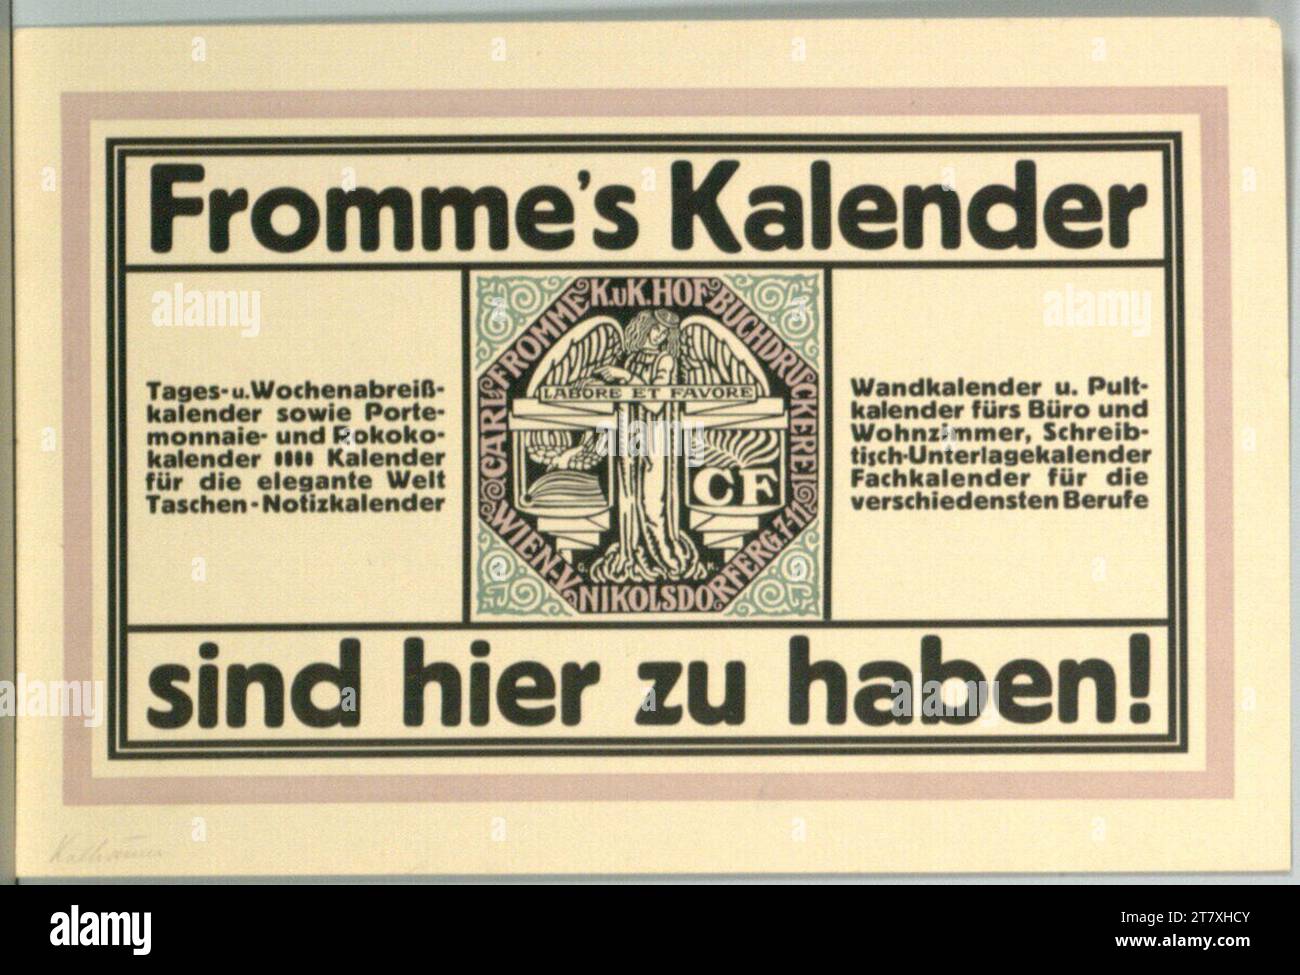 Il calendario di Gustav Kalhammer Fromme è disponibile qui!; Carl Fromme K. U. K. Hofbuchdruckerei. Colore intorno a 1910 Foto Stock